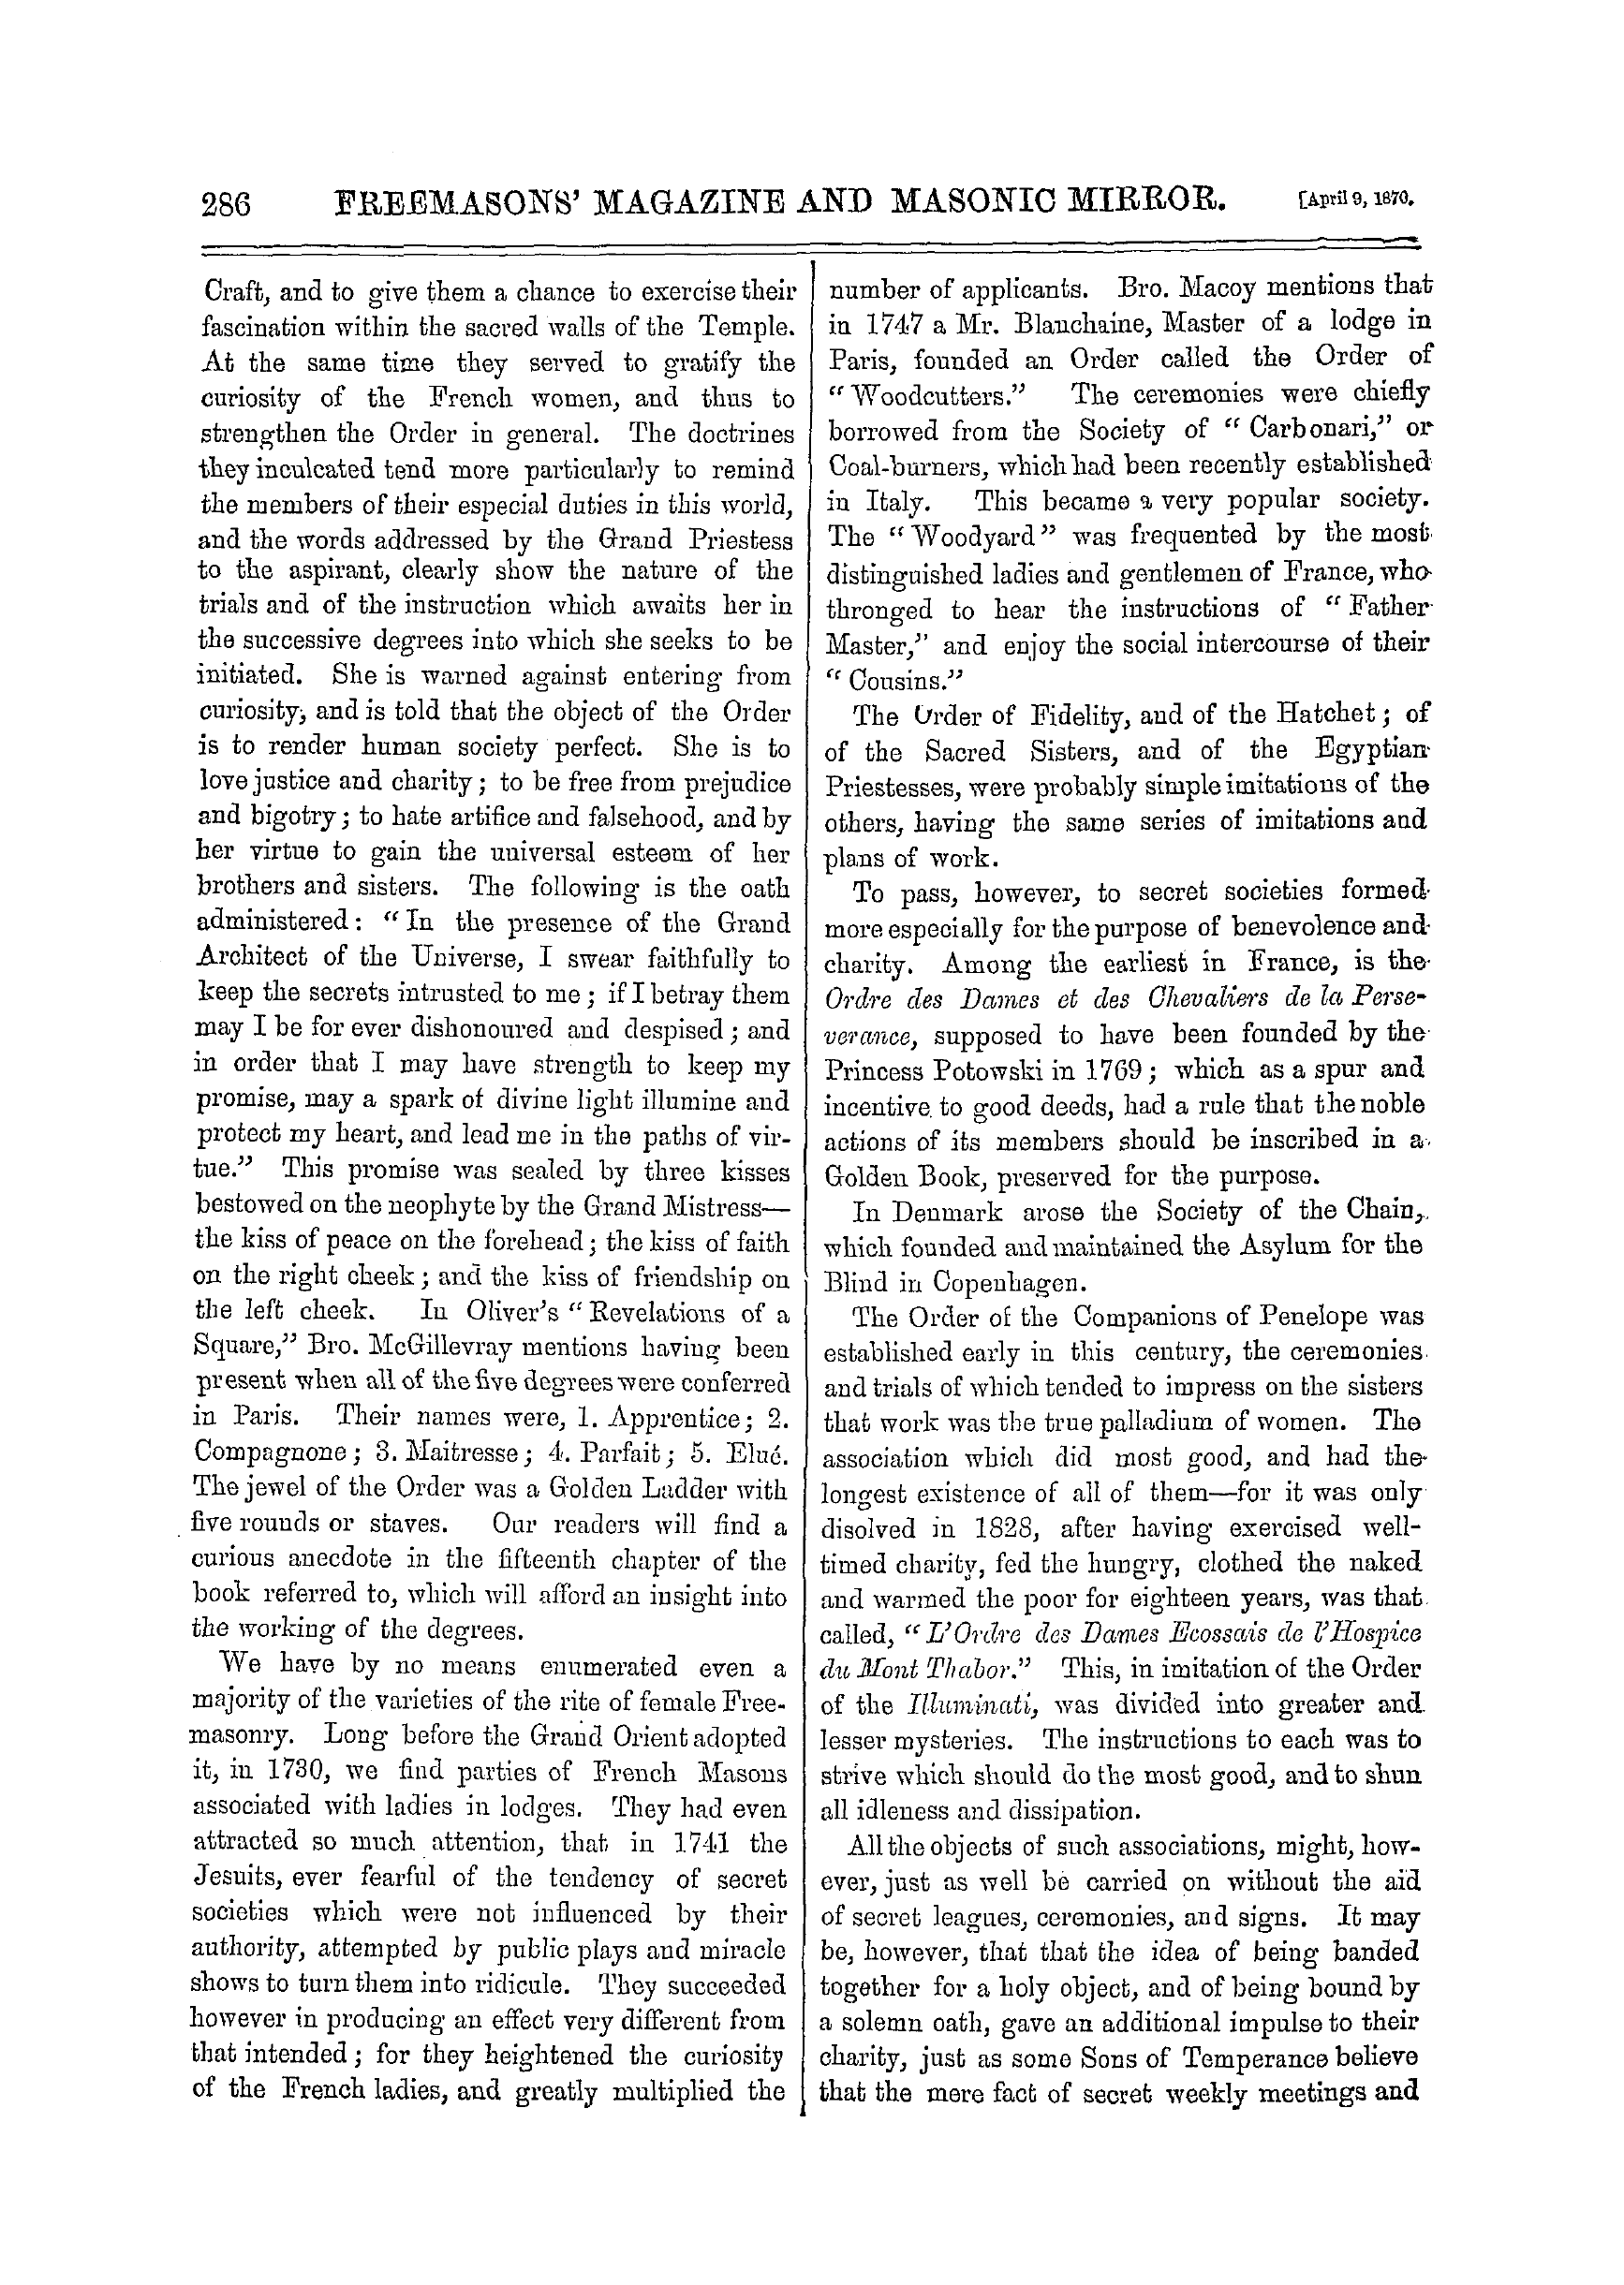 The Freemasons' Monthly Magazine: 1870-04-09 - History Of Masonic Imitations.